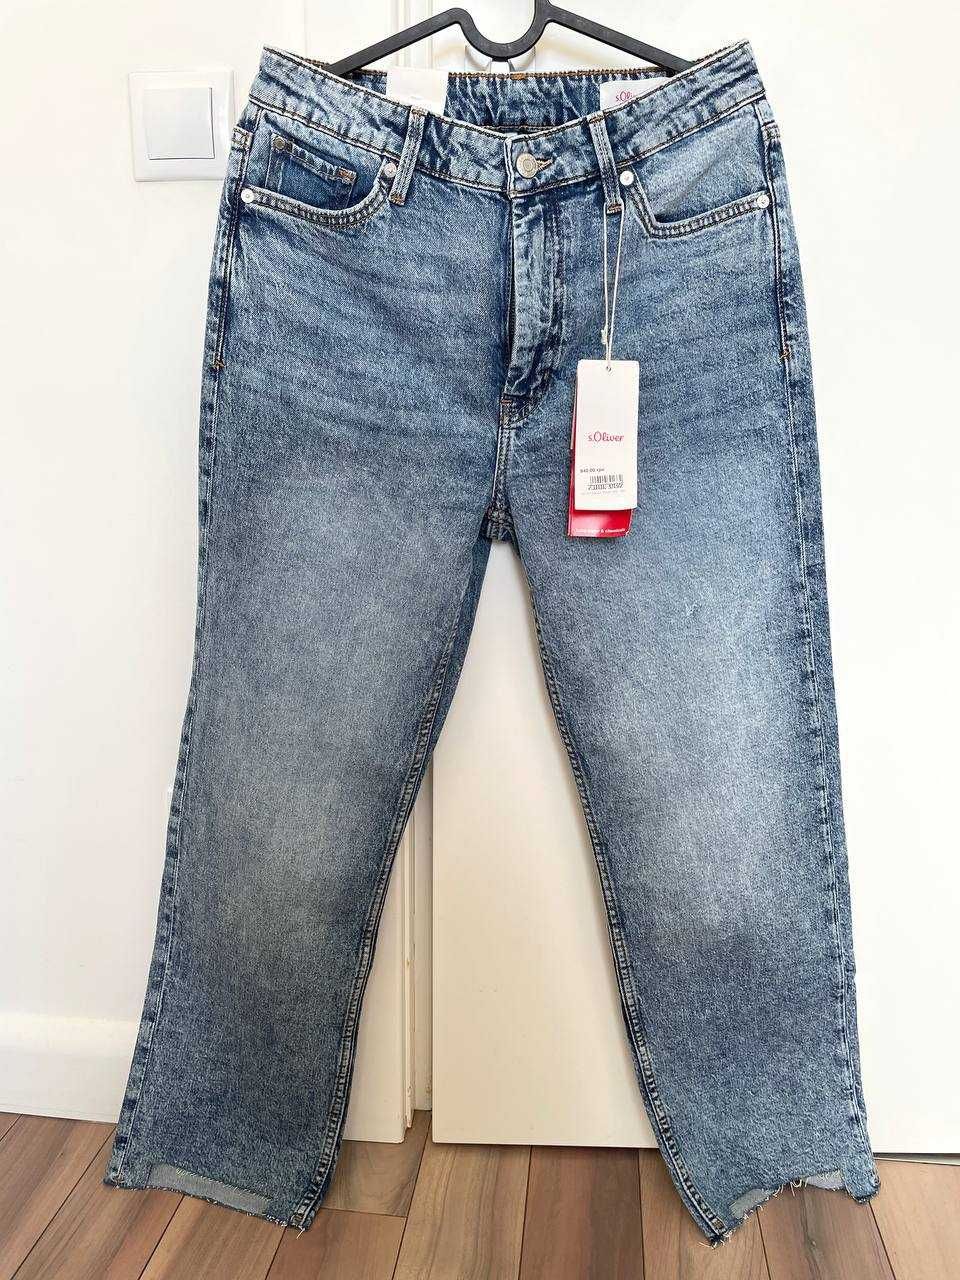 S.oliver світло-сині джинси, нові прямі, літні, 36 розмір